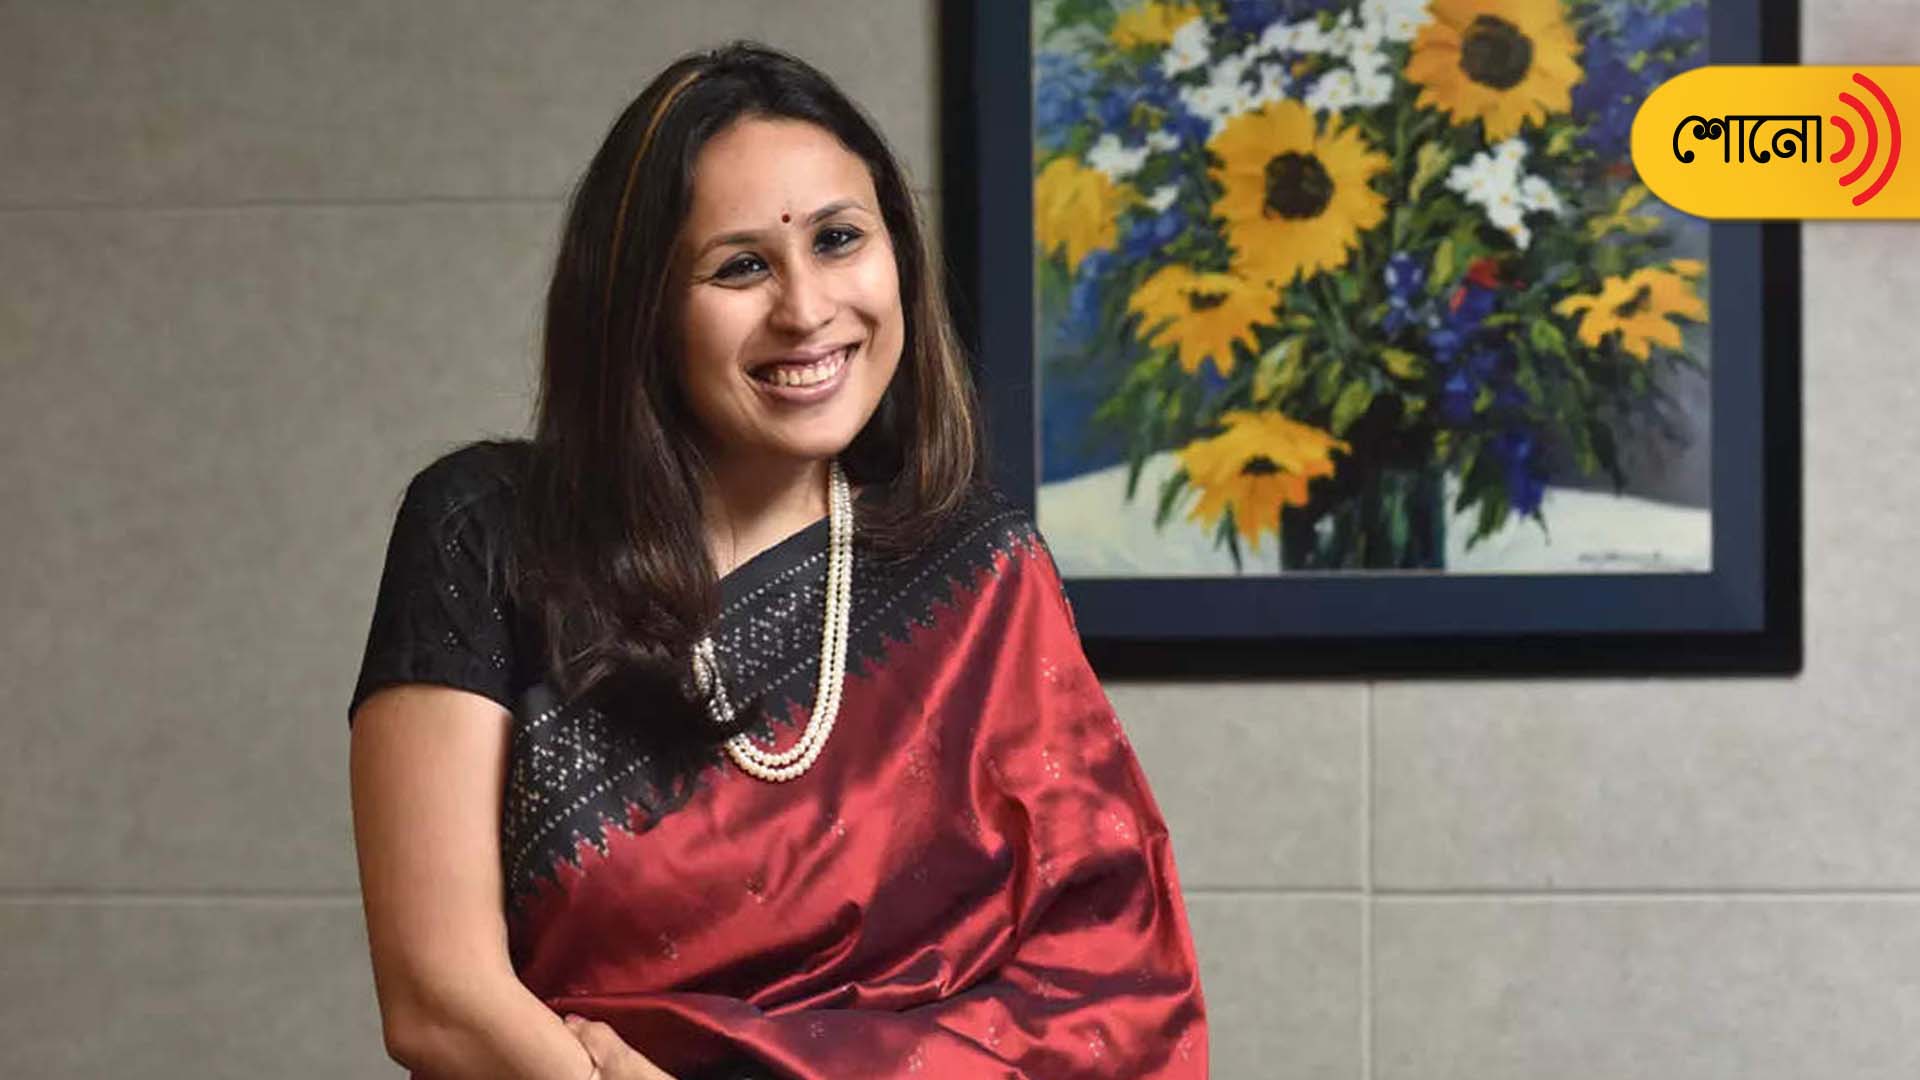 Women work more than 70 hours, Radhika Gupta's take on Narayana Murthy